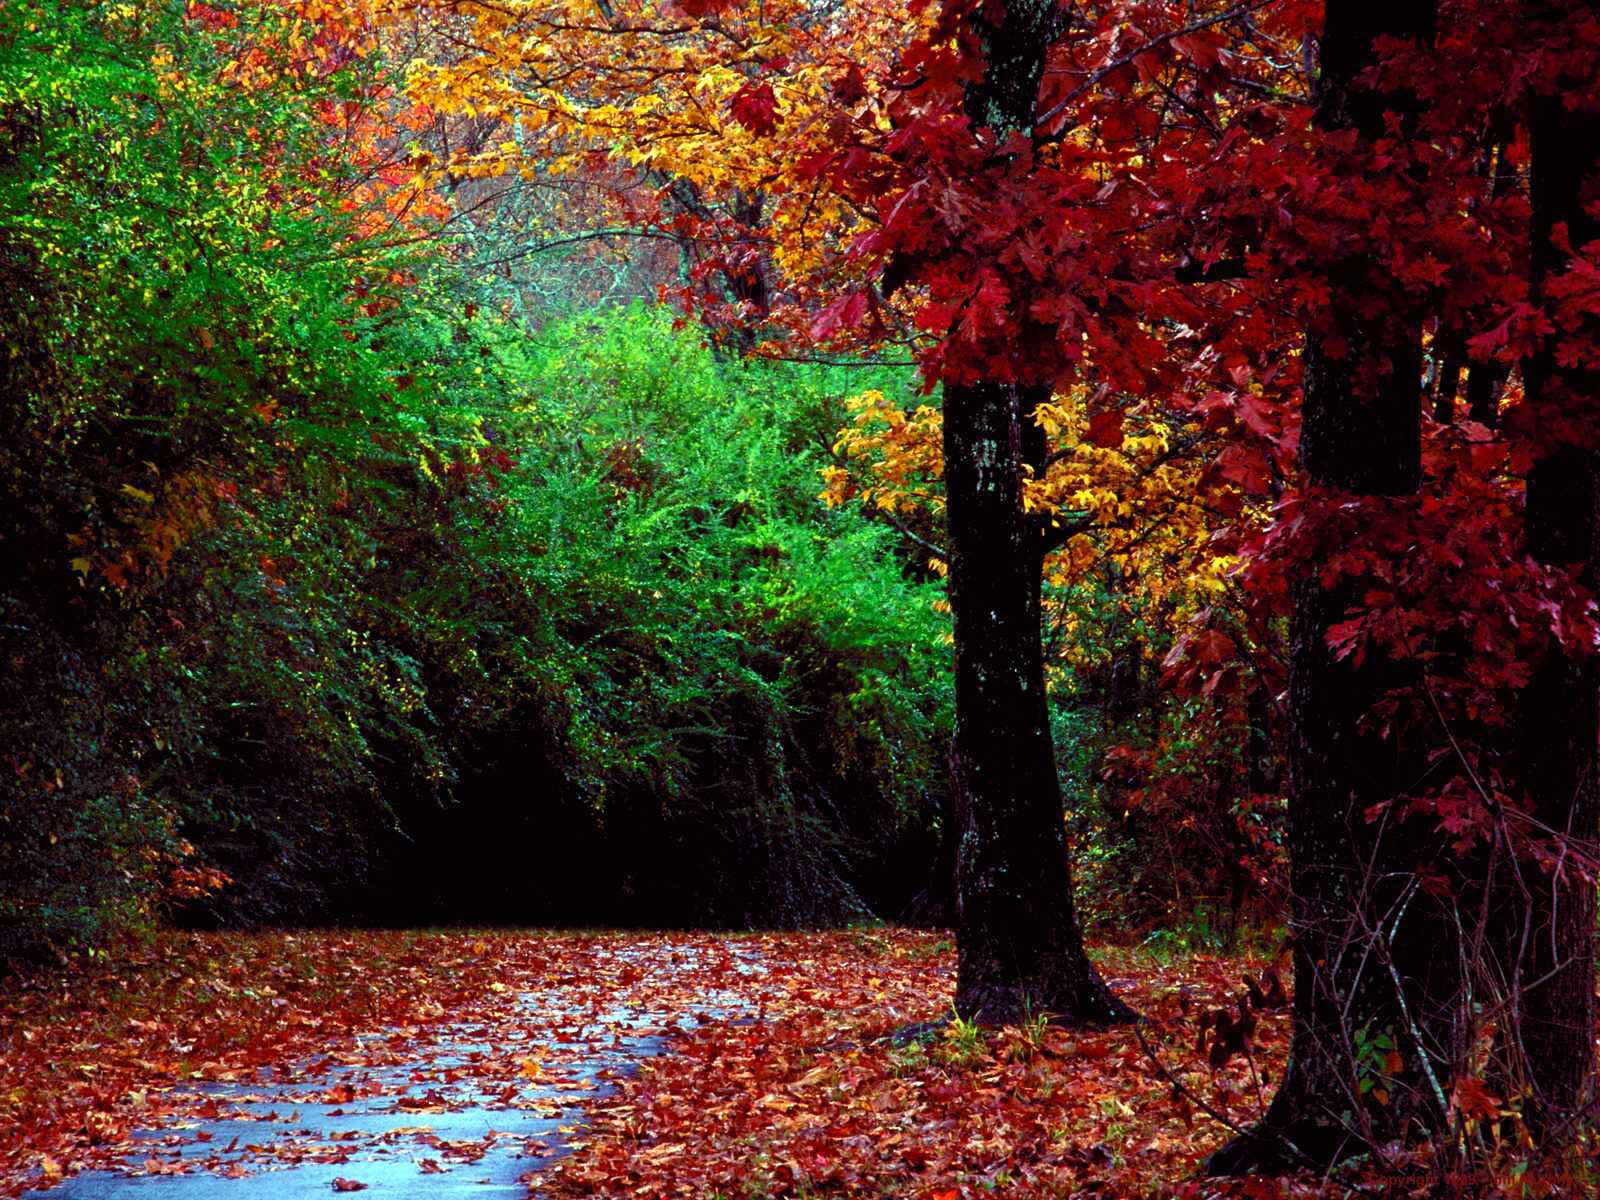 http://3.bp.blogspot.com/-wbcxrmRCAZA/UC3VAnbScMI/AAAAAAAAAbU/rSZPWGnO4m4/s1600/Autumn_Forest_and_Landscape_Color.jpg